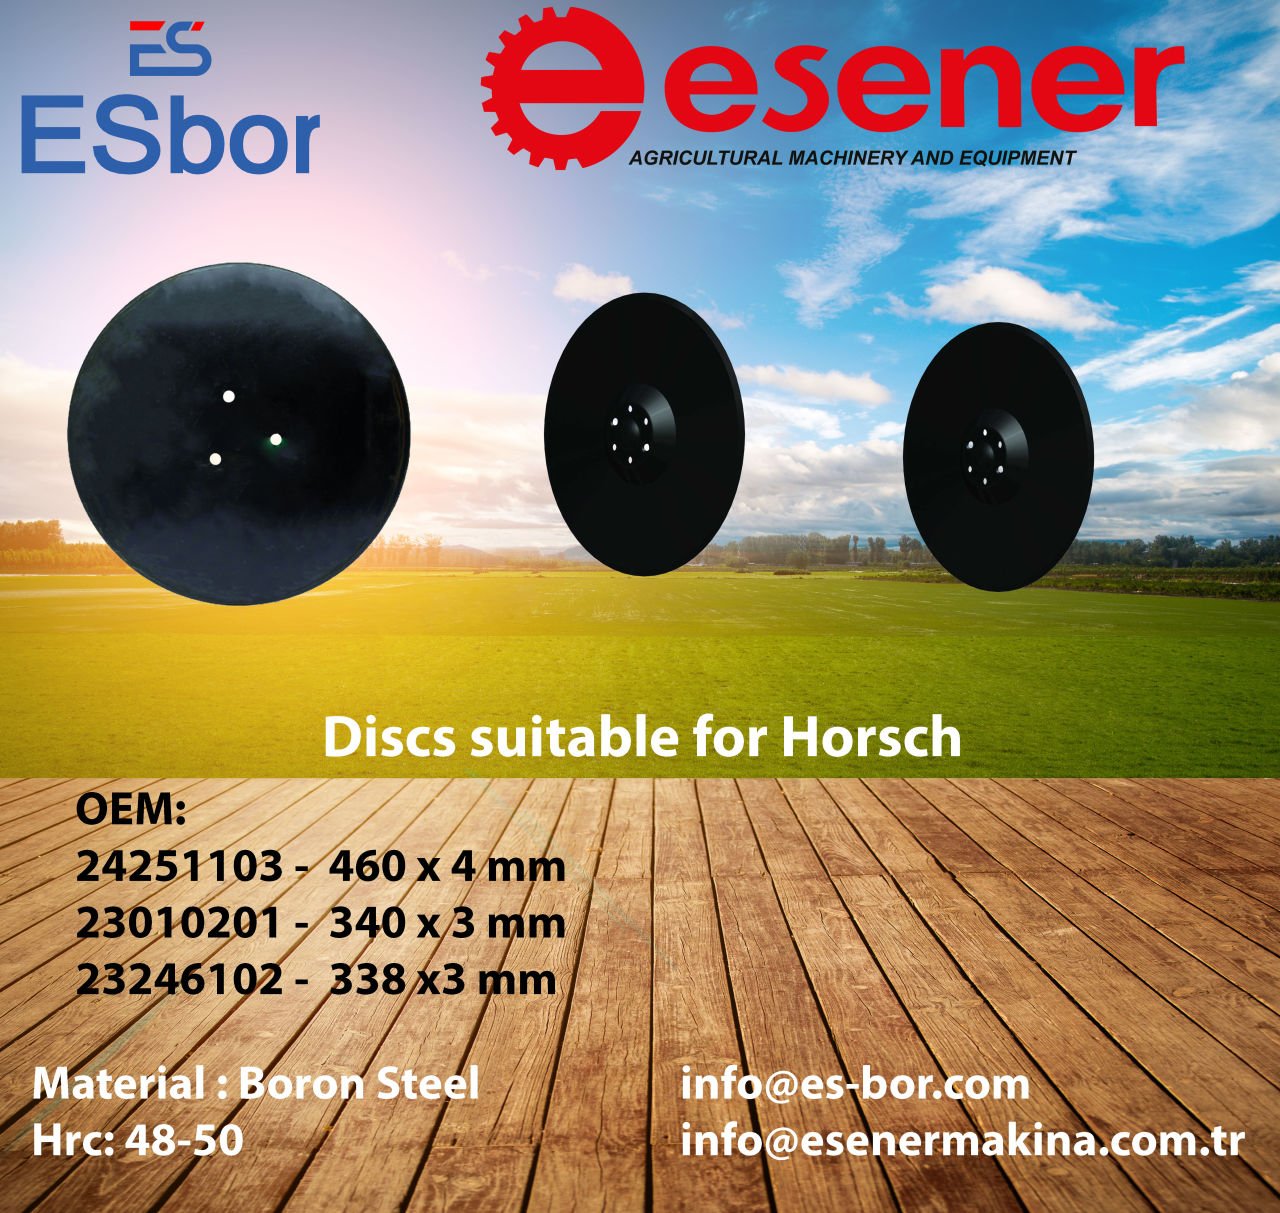 Esbor ile Horsch Marka Tarım Makineleriniz İçin Optimize Edilmiş Diskler